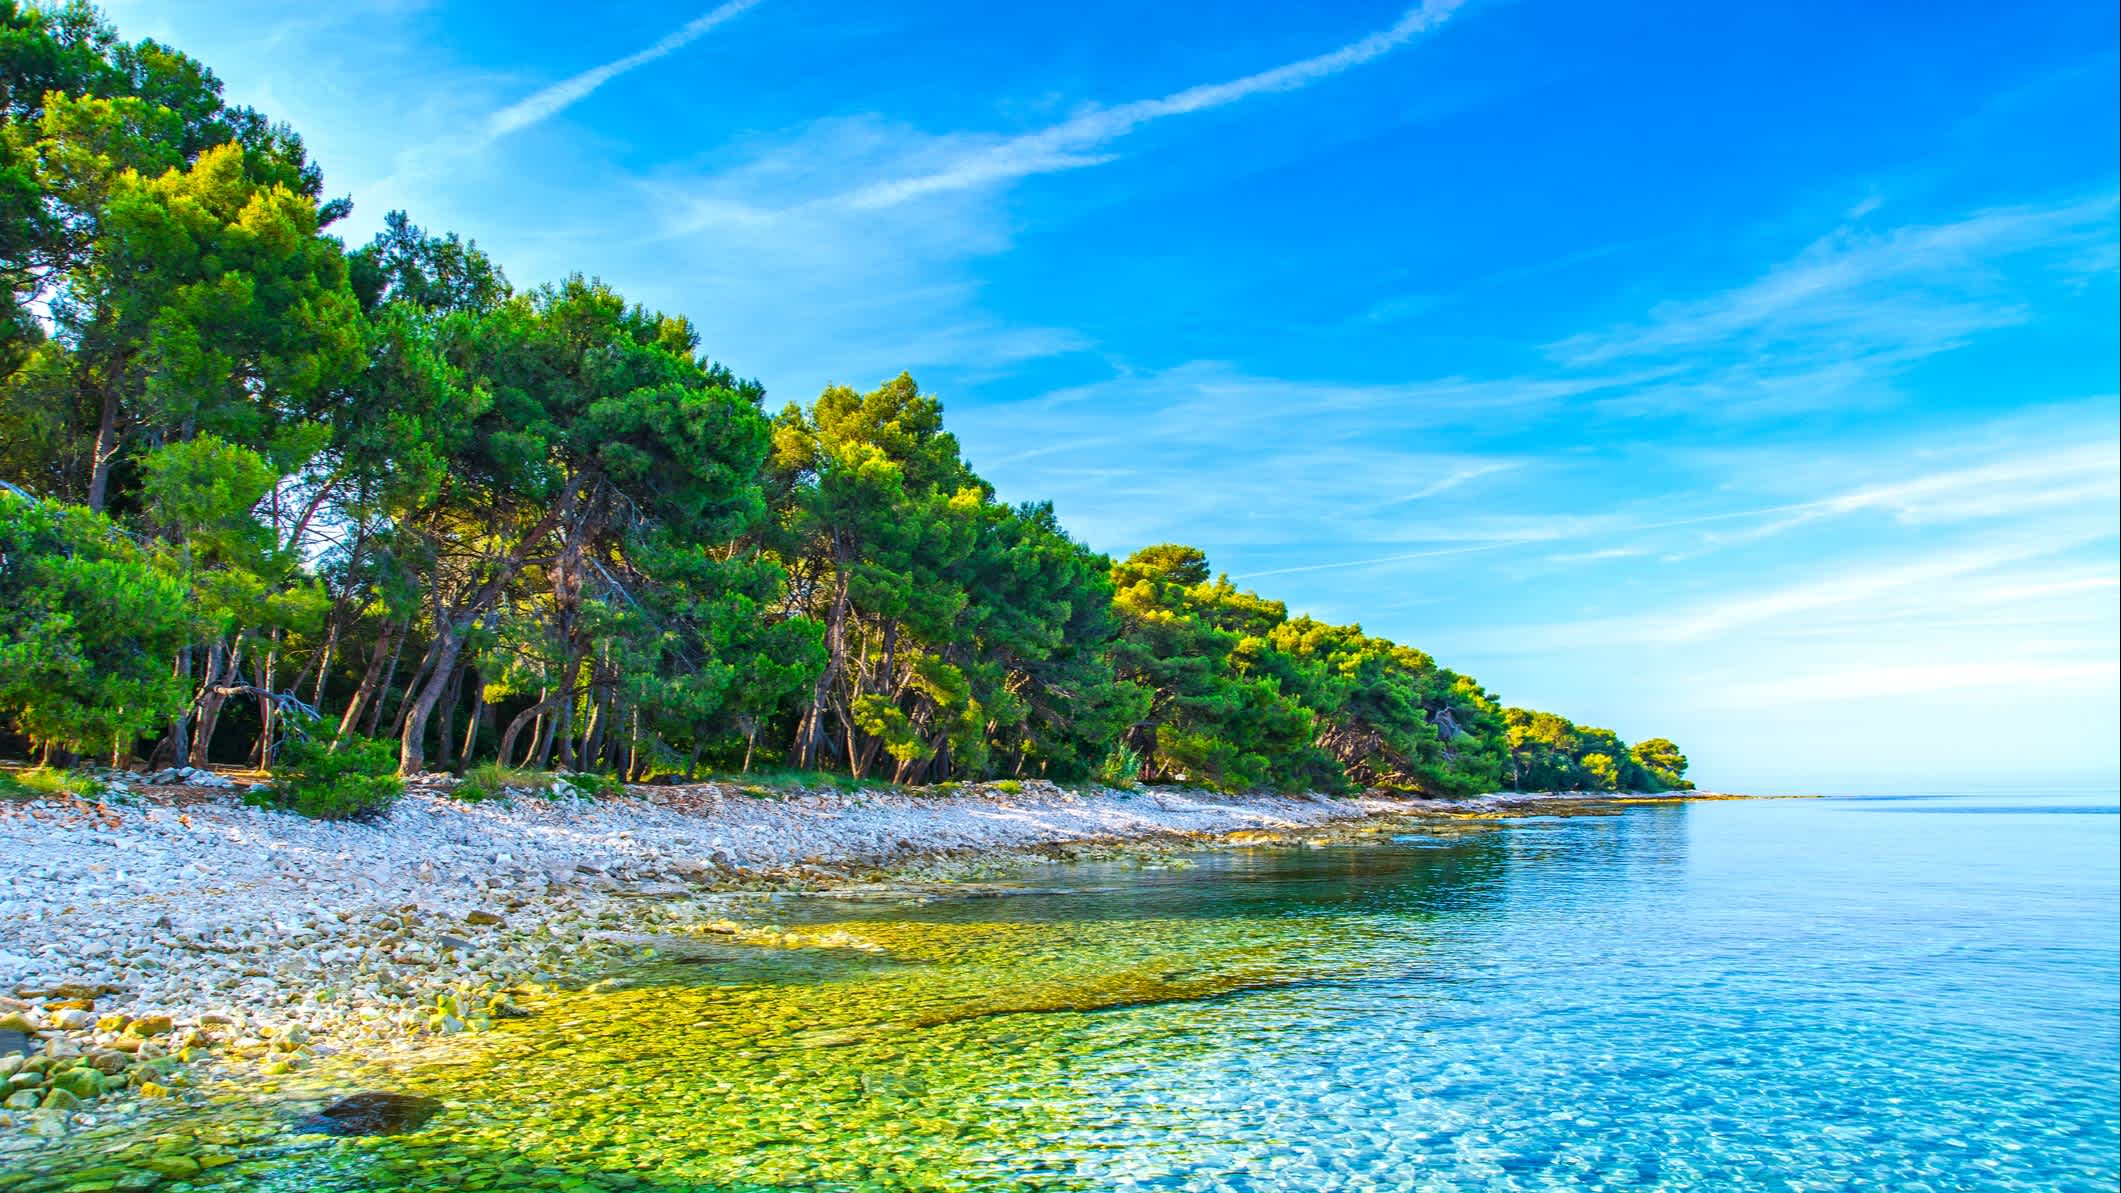 Adriaküste in der Nähe von Pula, Valbandon, Istrien, Kroatien.

